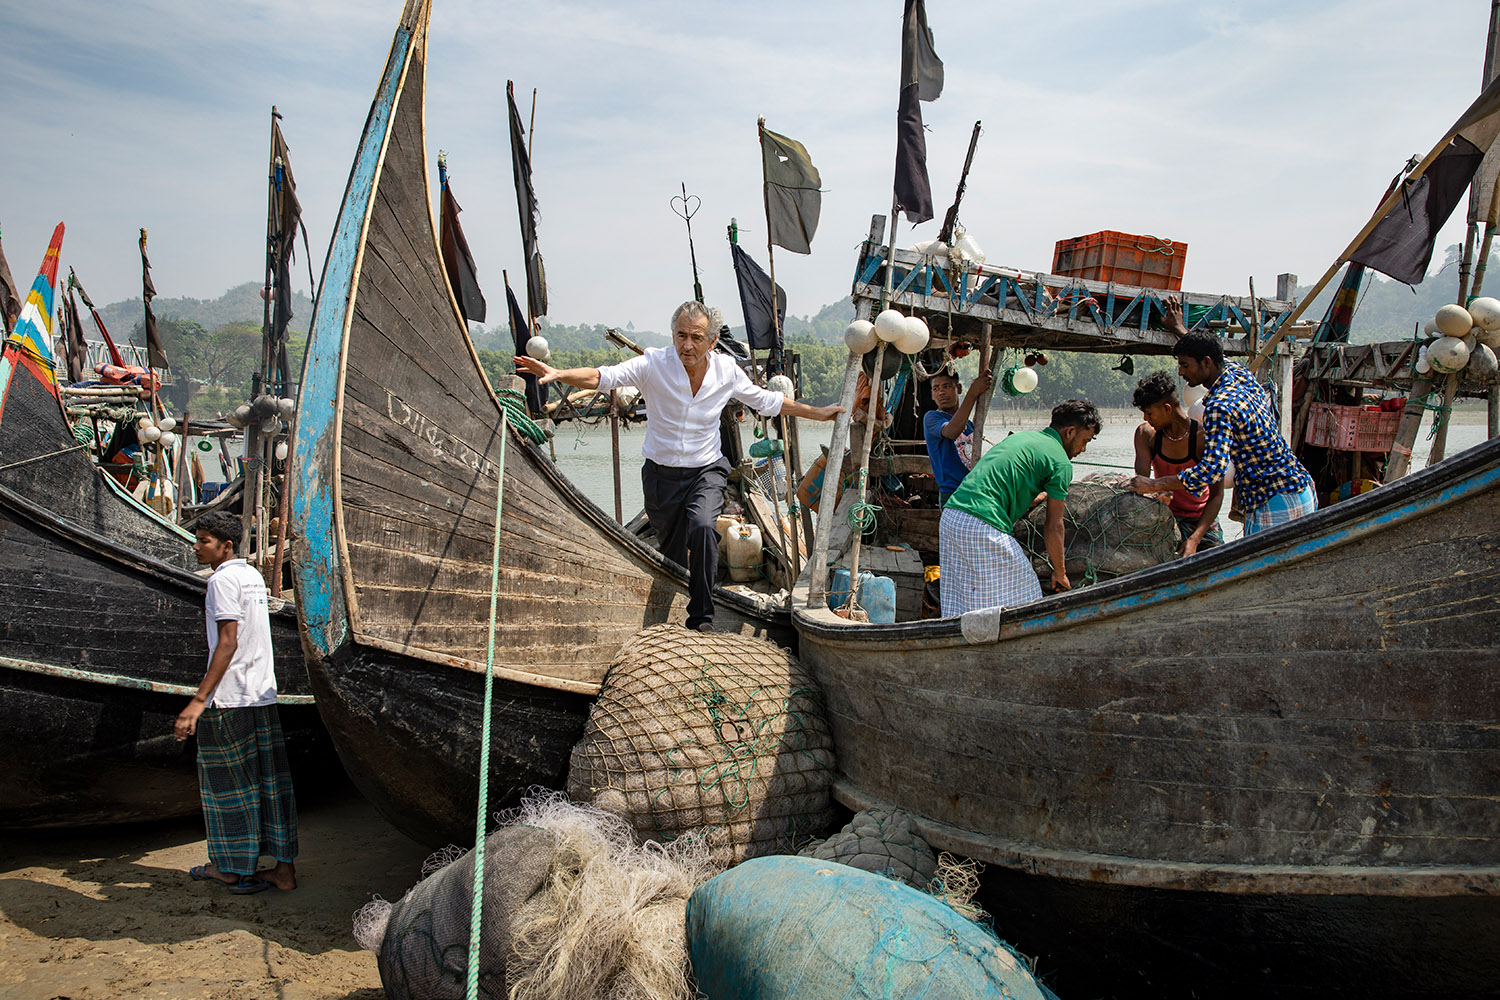 Bernard-Henri Lévy sur un bateau accosté sur la plage de Cox's Bazar au Bangladesh.